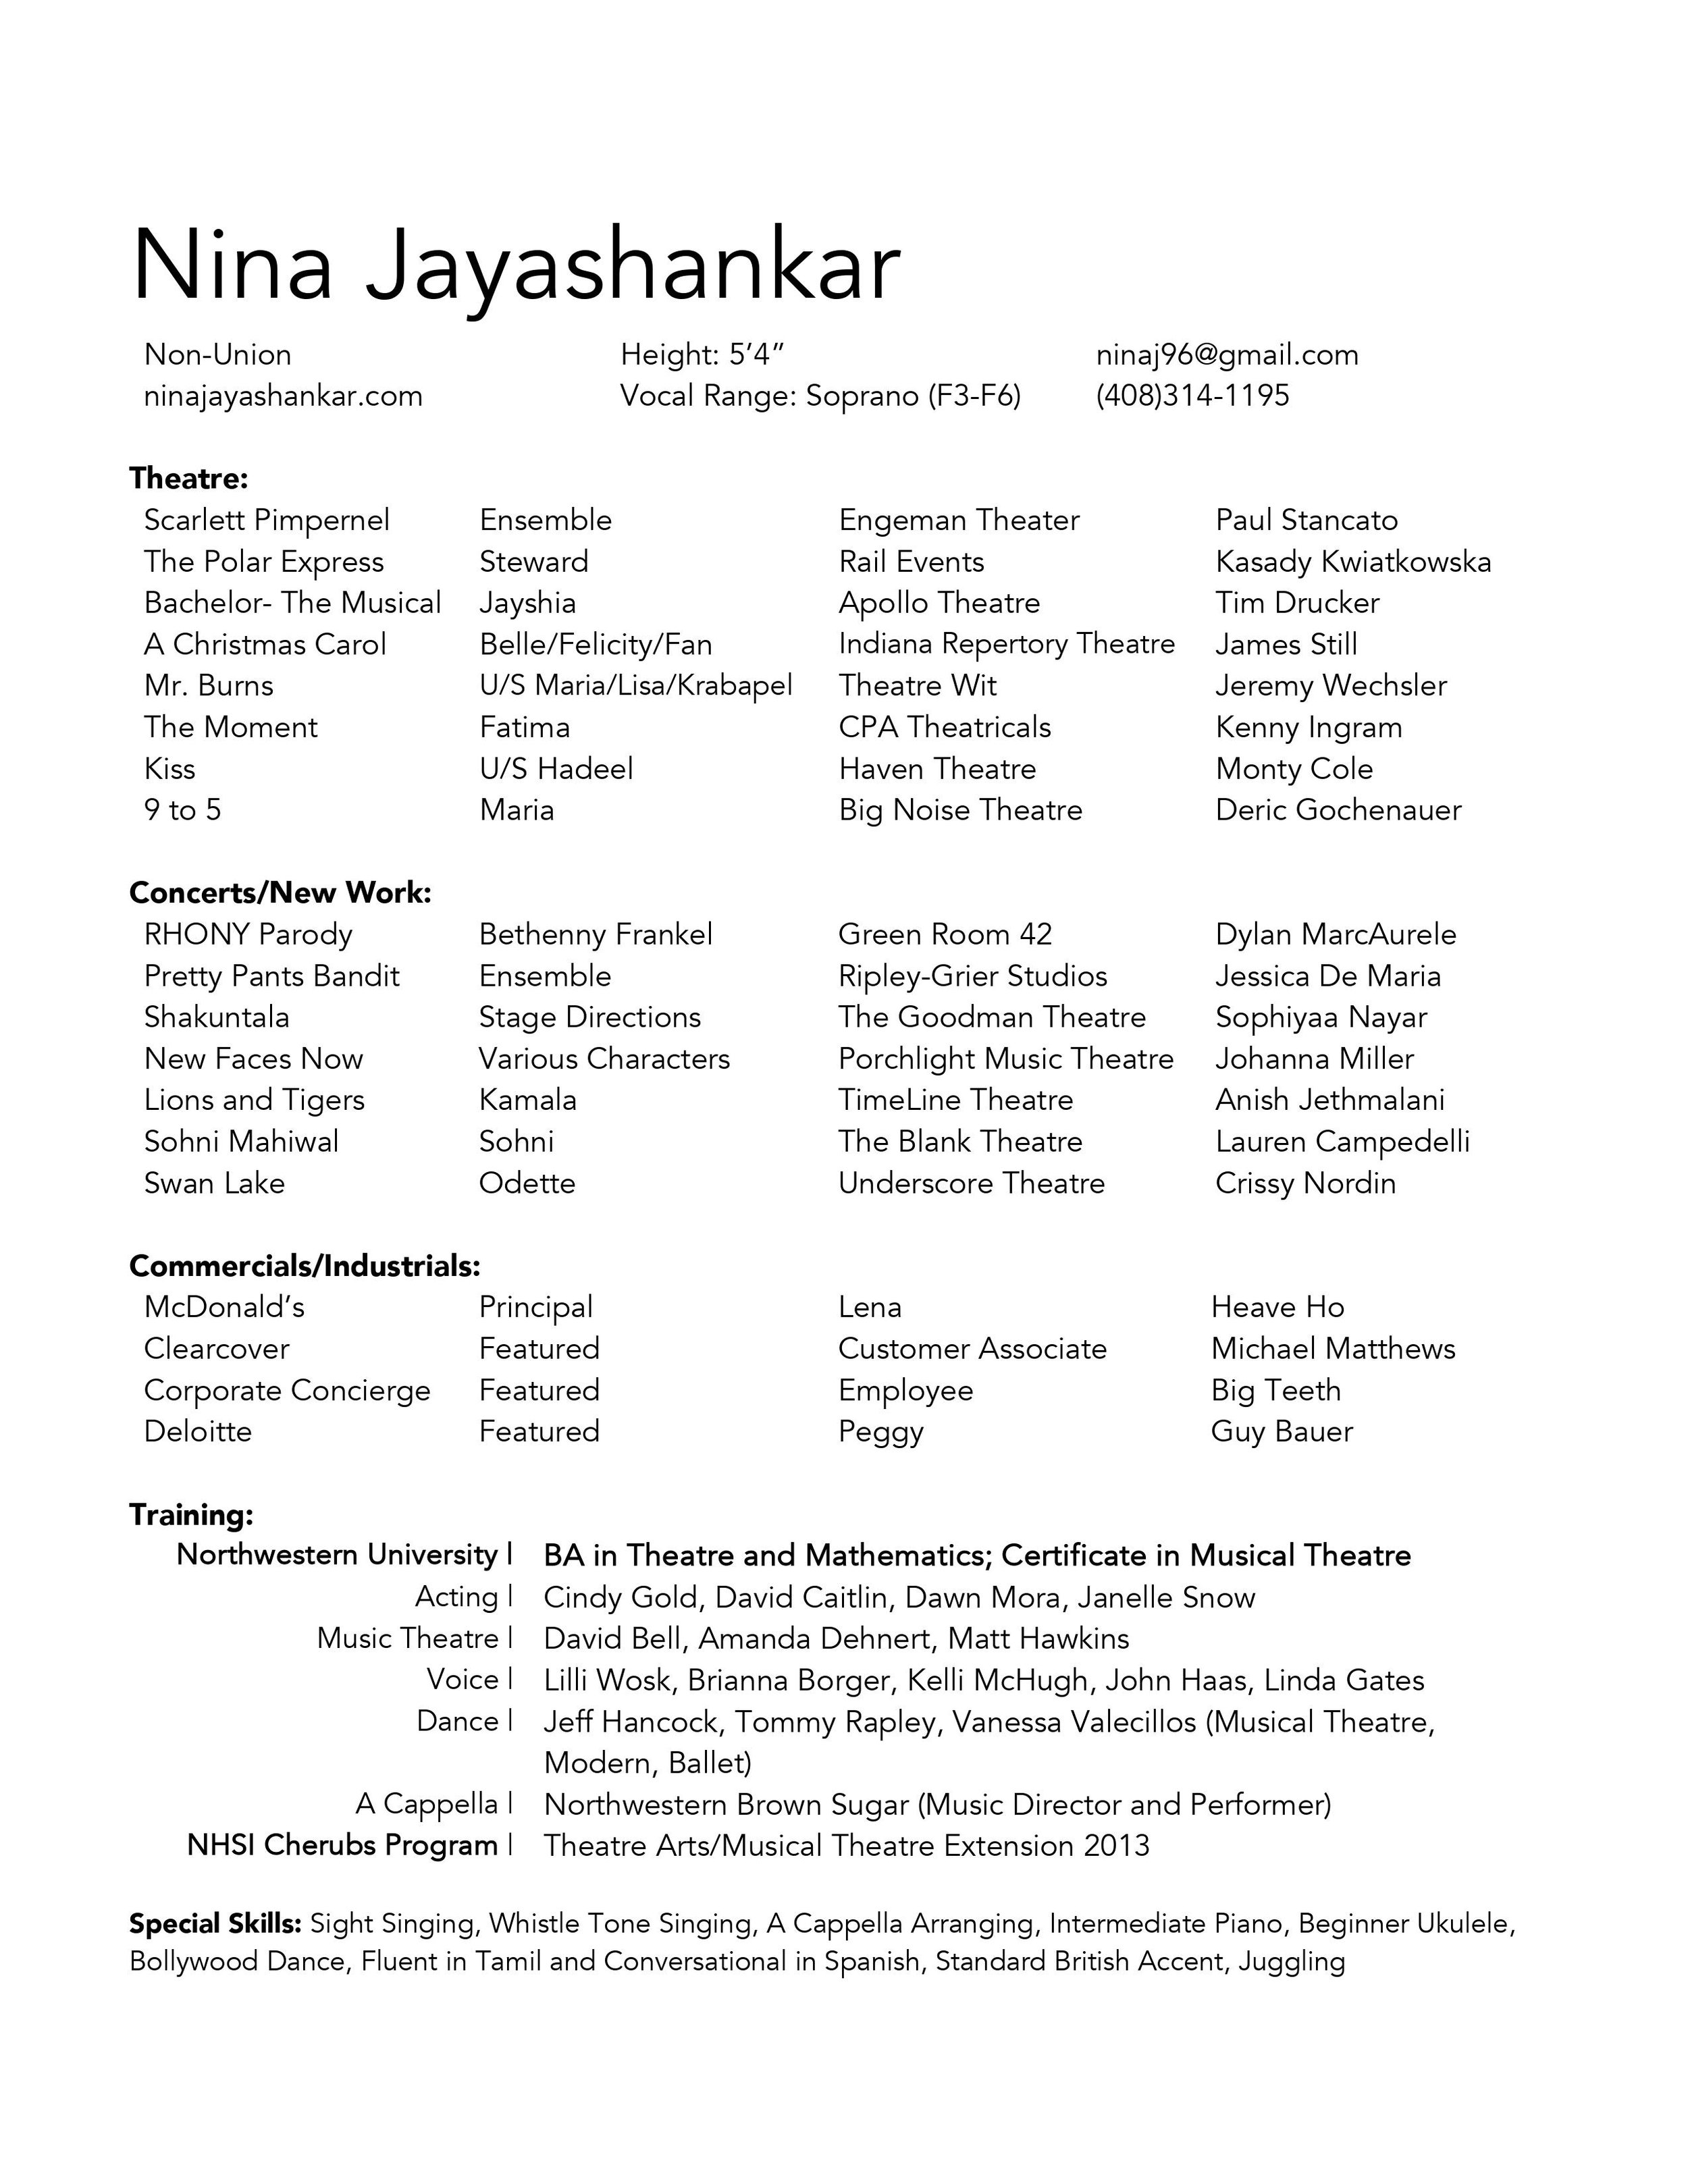 Nina Jayashankar Resume (3).jpg